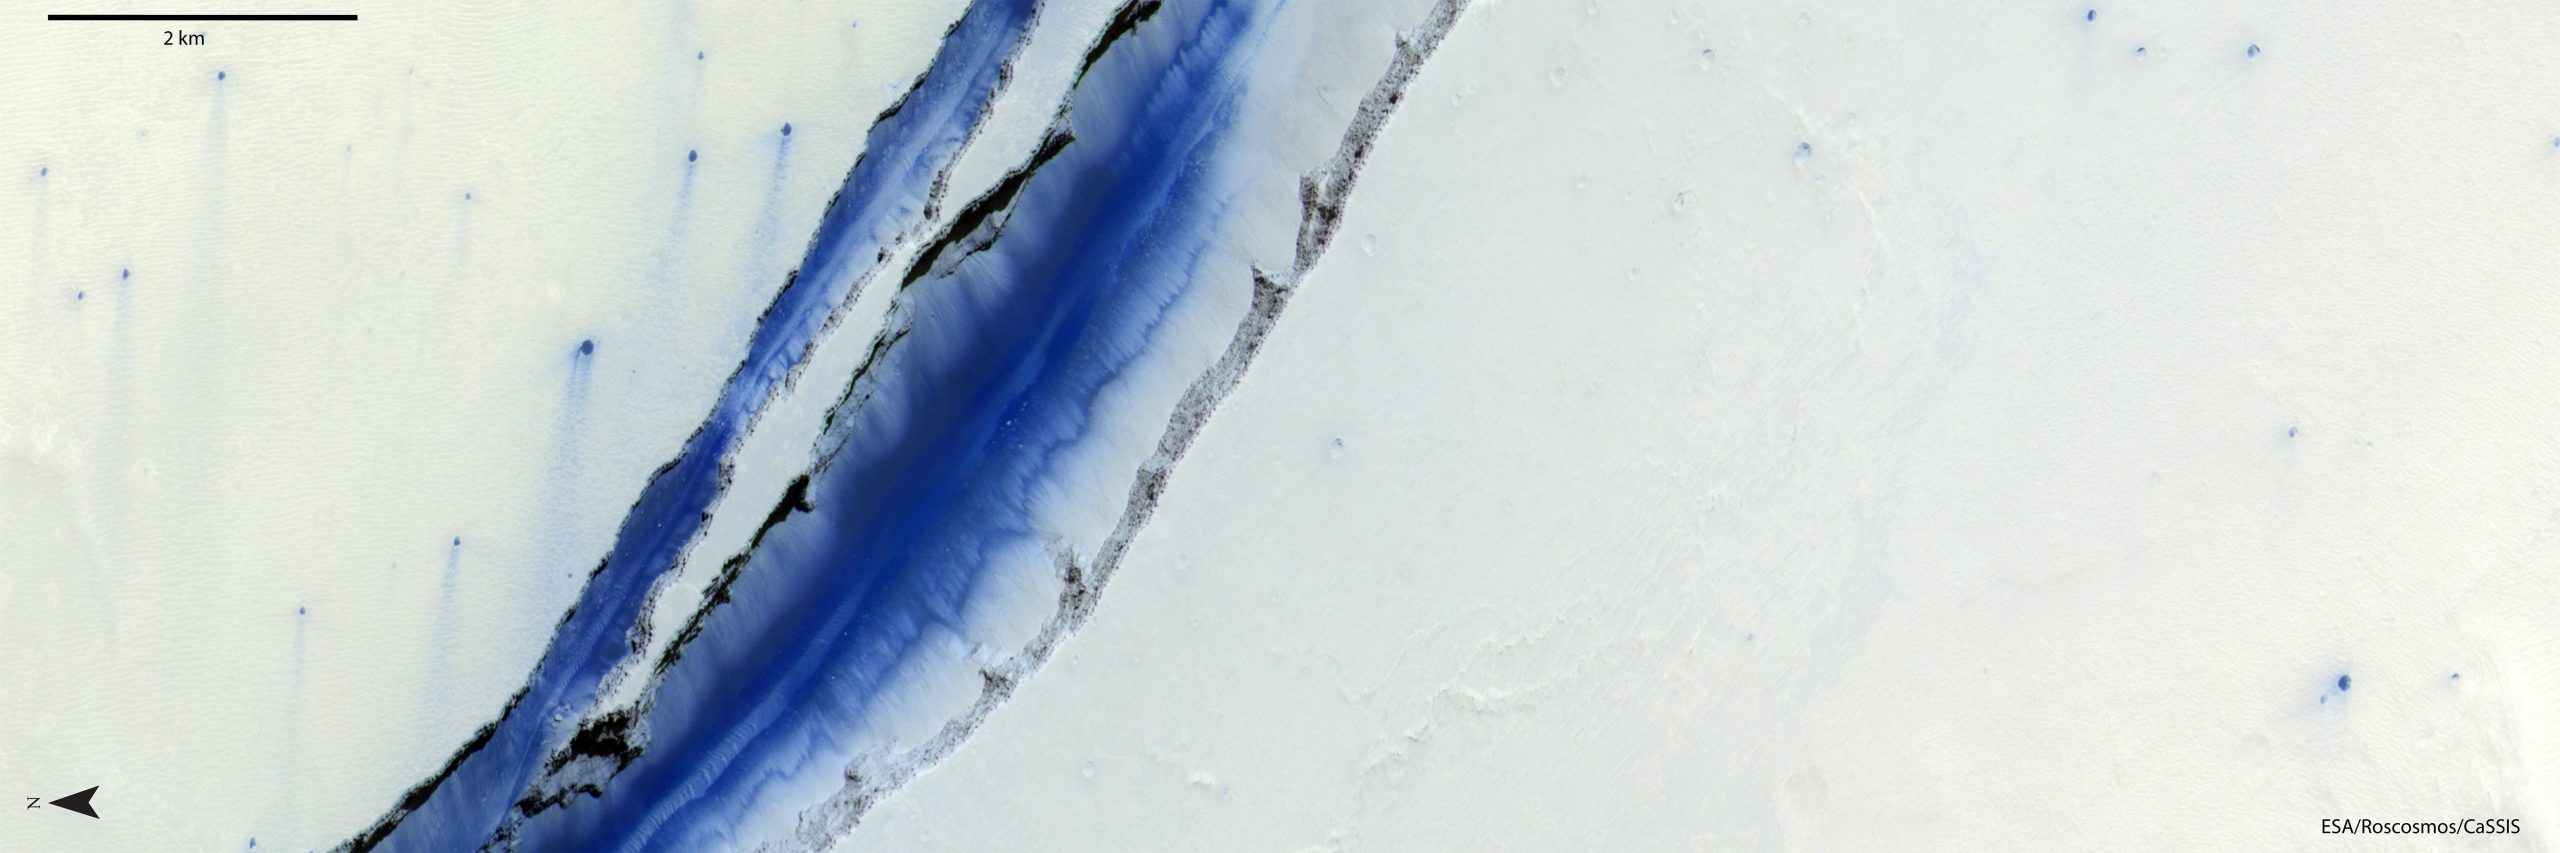 ExoMars轨道飞行器捕捉到火星山沟Cerberus Fossae的惊人图像